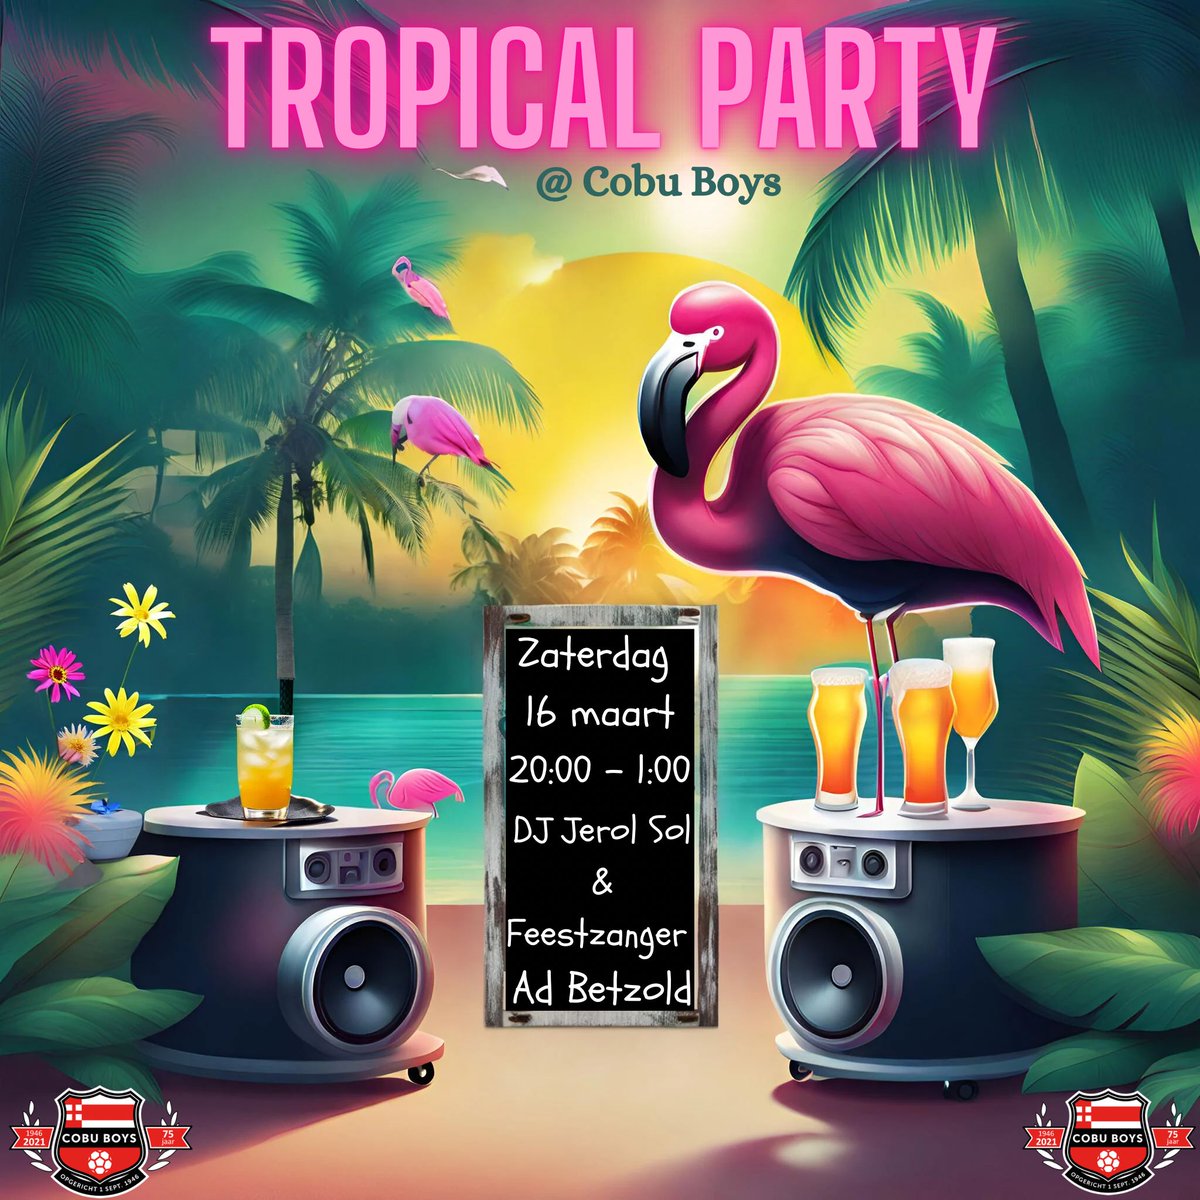 🎉 PARTY ALERT 🚨

🏝️ Tropical Party
📅 16 maart
📍 Kantine Cobu Boys
⏰ 20:00 - 1:00

Op 16 maart is onze kantine het decor voor een “Tropical Party”.  DJ Jerol Sol & Feestzanger Ad Betzold maken er een knallend, swingend en bubbelend feest van!